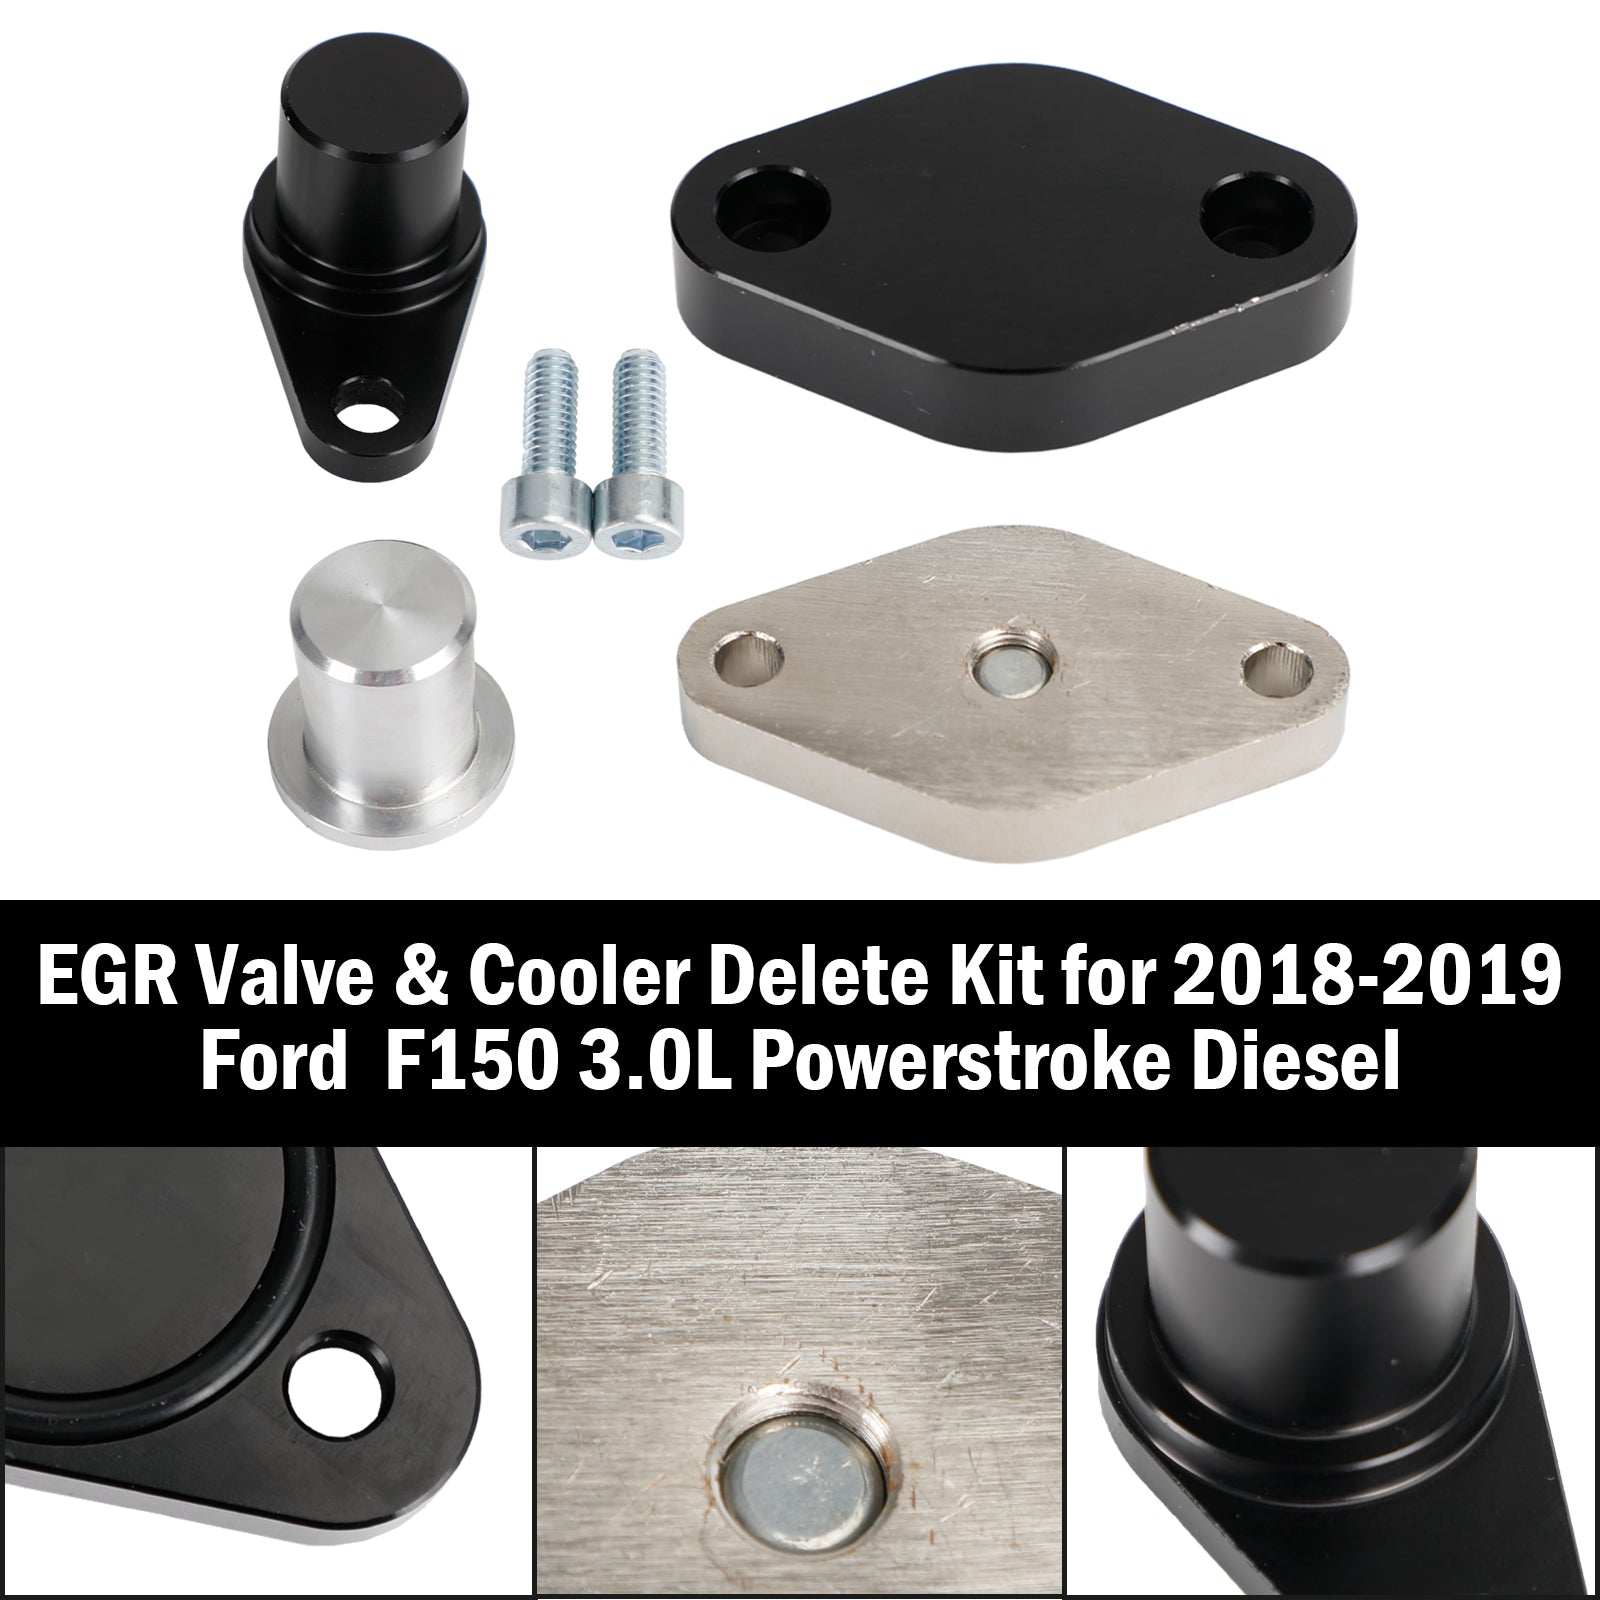 Ford 2018-2019 F150 3.0L Powerstroke Diesel EGR Valve & Cooler Delete Kit - 0